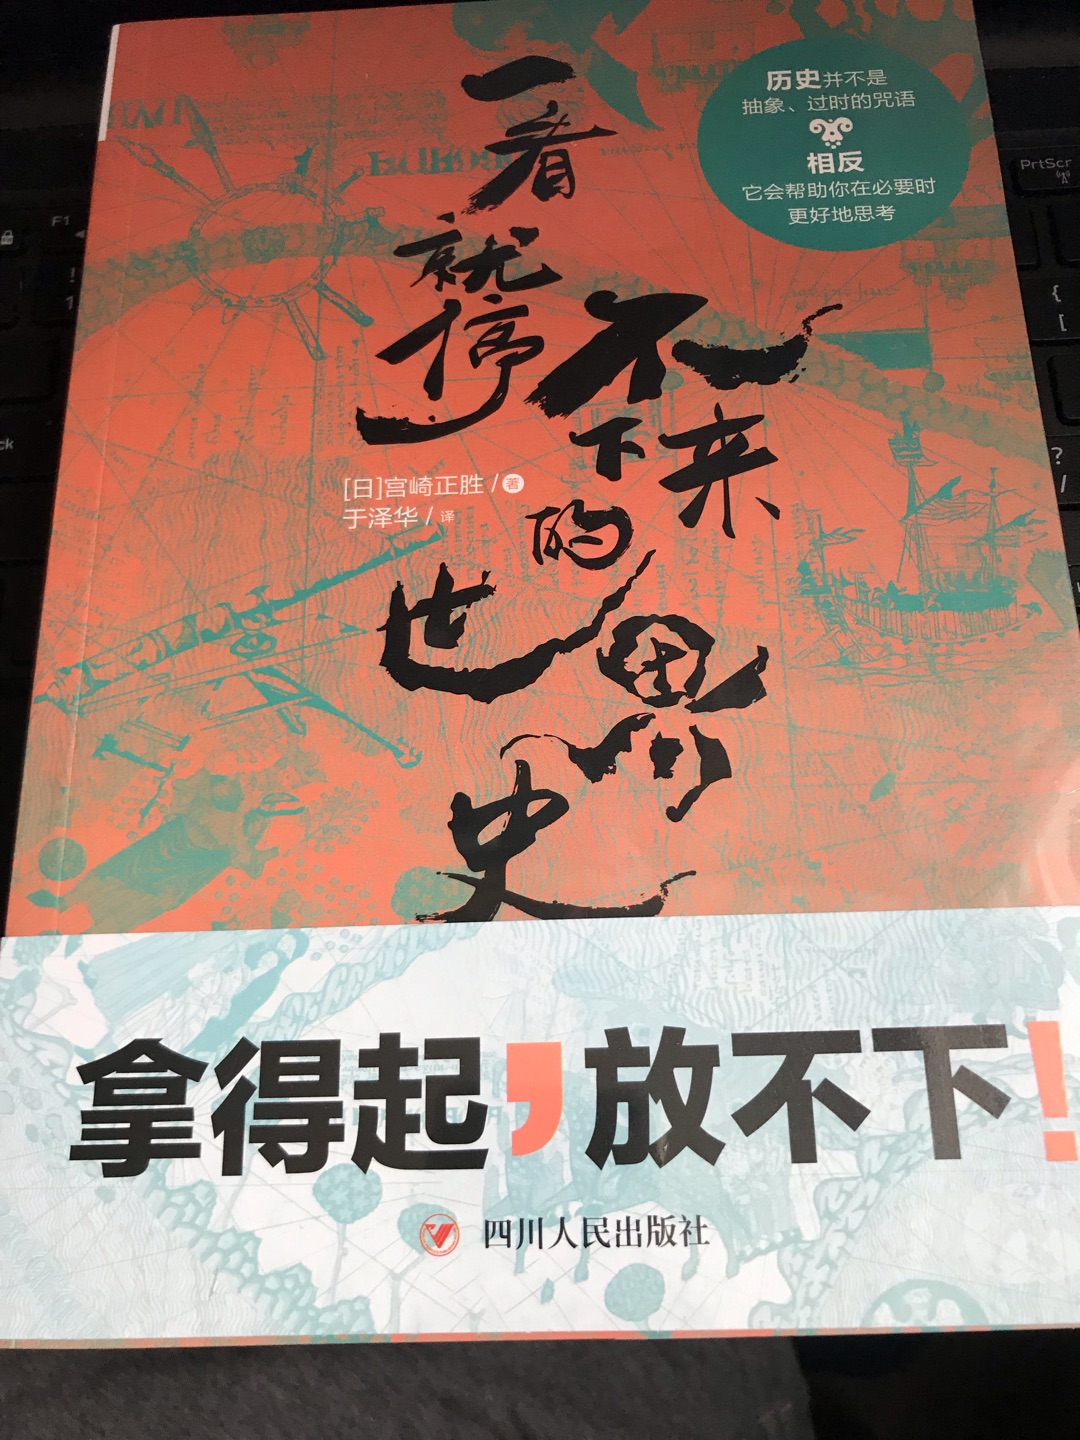 日本人的视角下的世界历史，还是很有期待的，推荐阅读